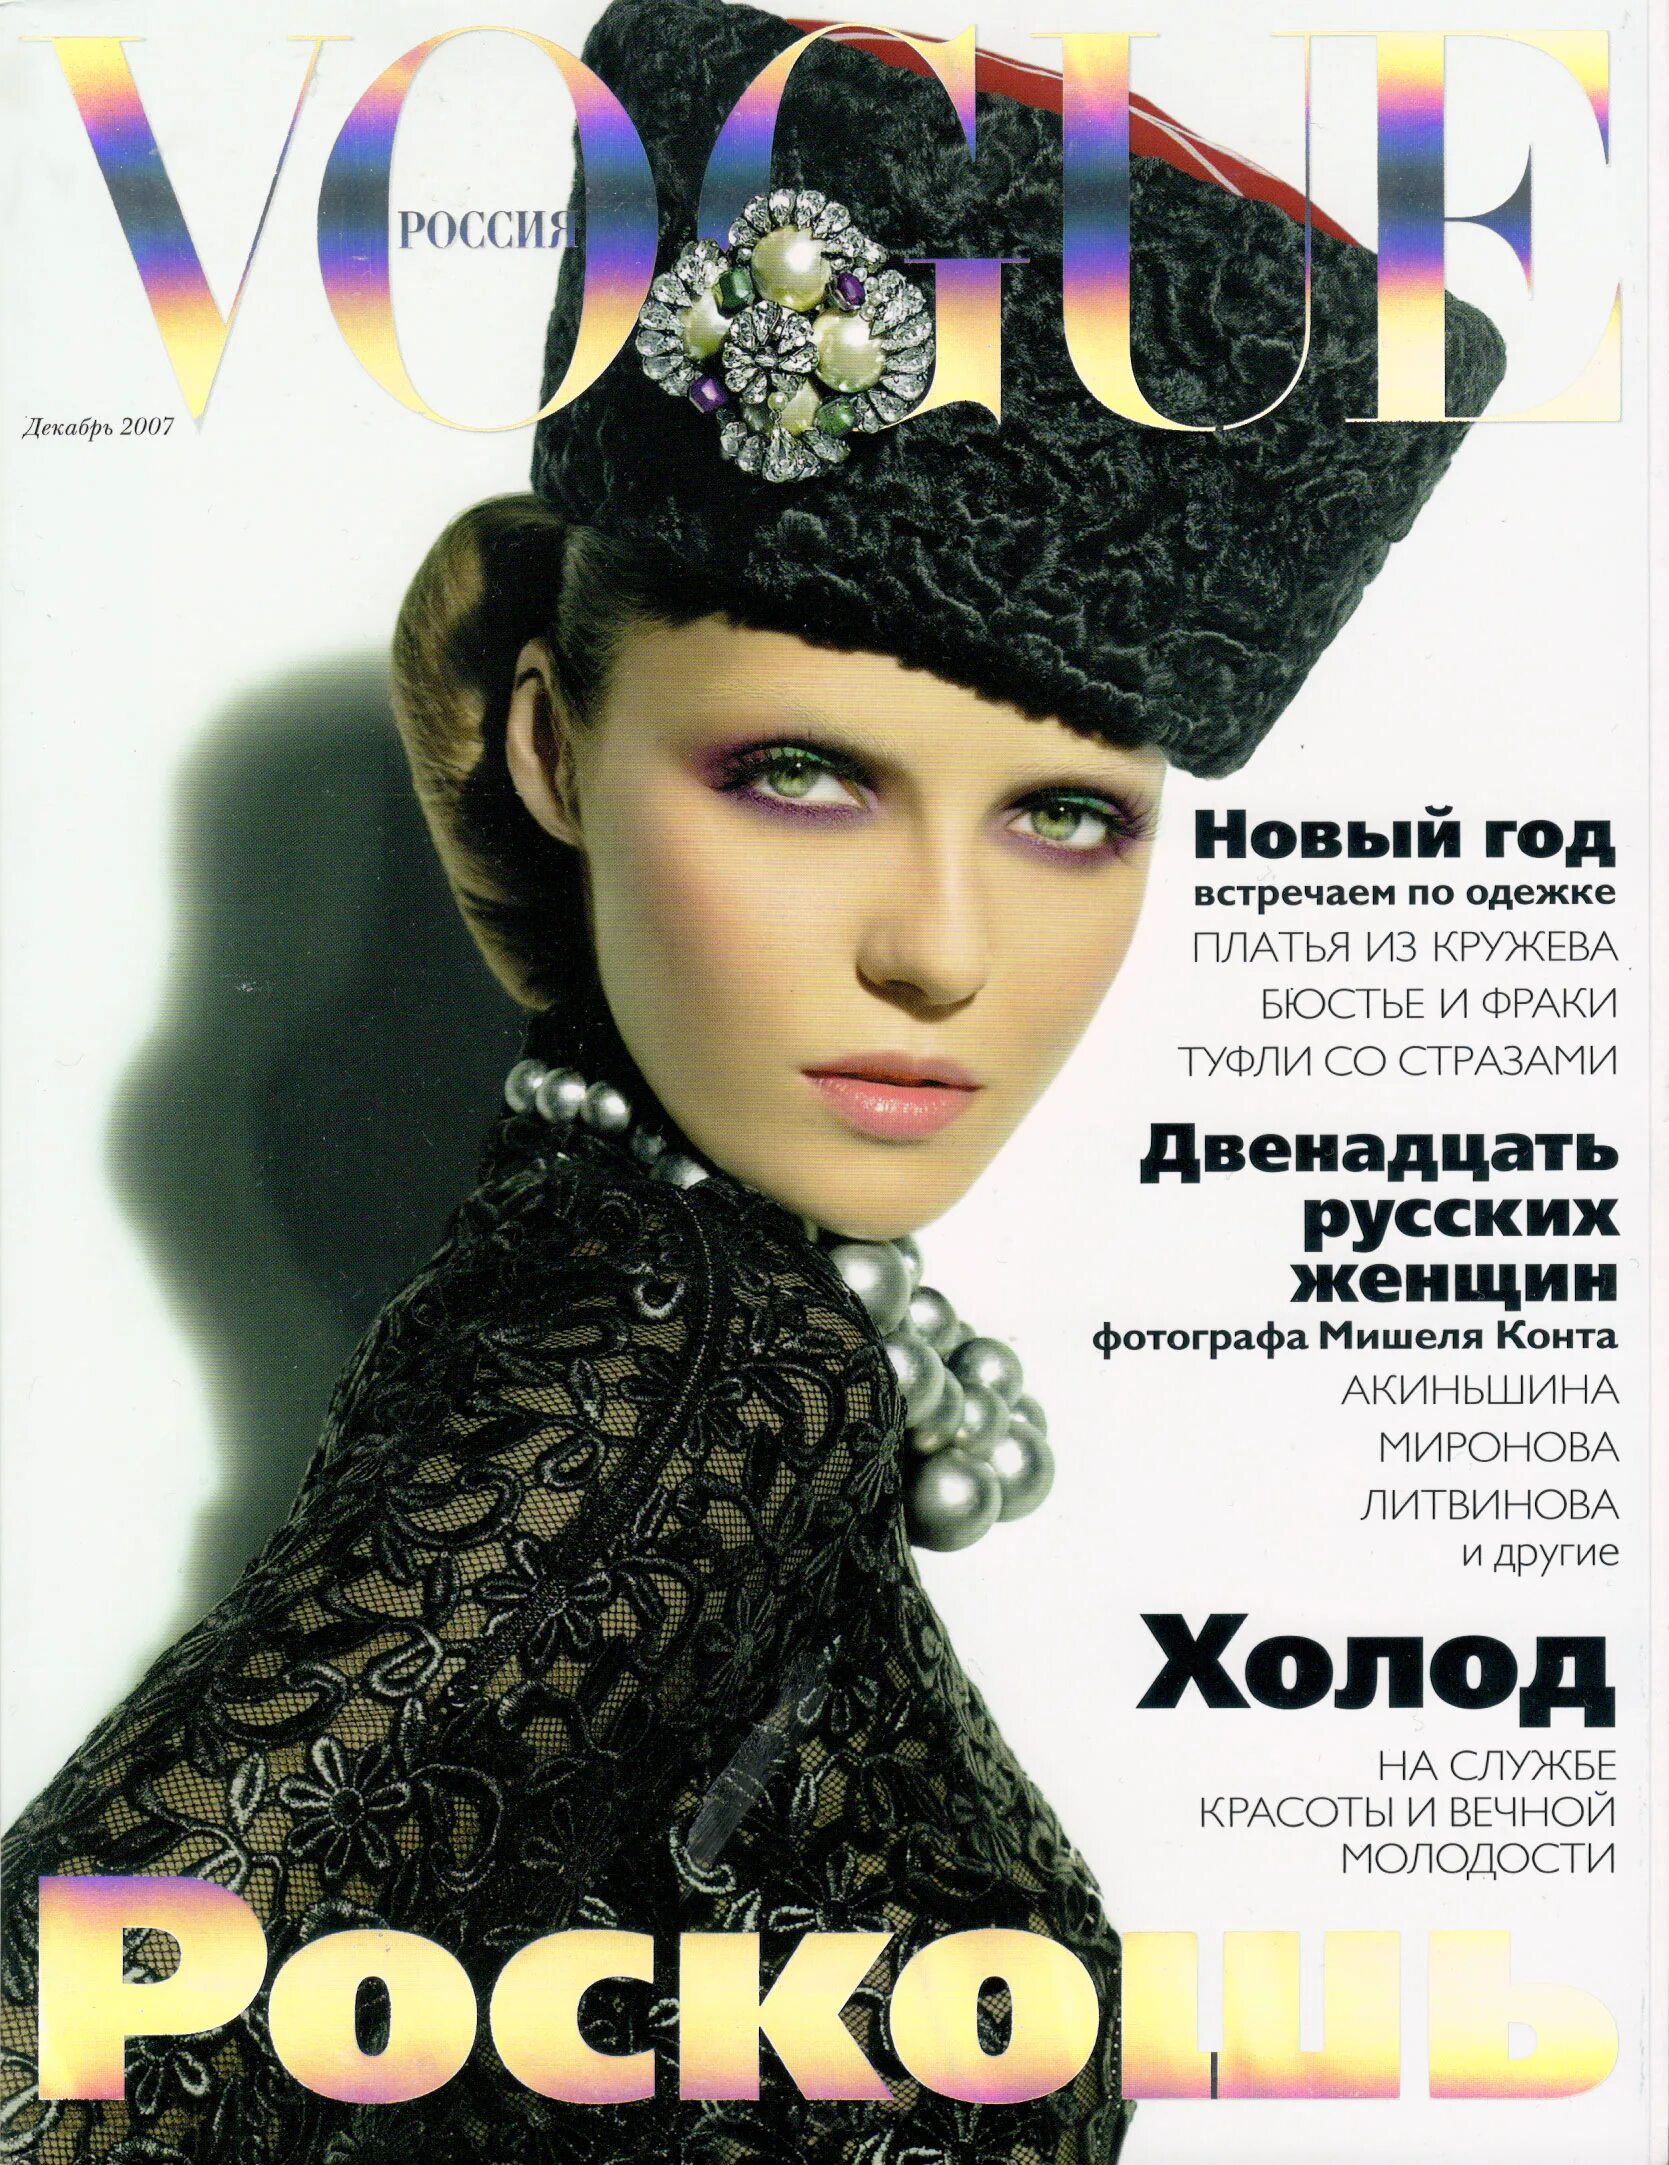 Valentina Zelyaeva Vogue. Обложка «Vogue. Russia» декабрь 2005 год. Обложка «Vogue. Russia» декабрь 2015 год. Журнал Vogue Россия декабрь 2020. Обложки русских журналов